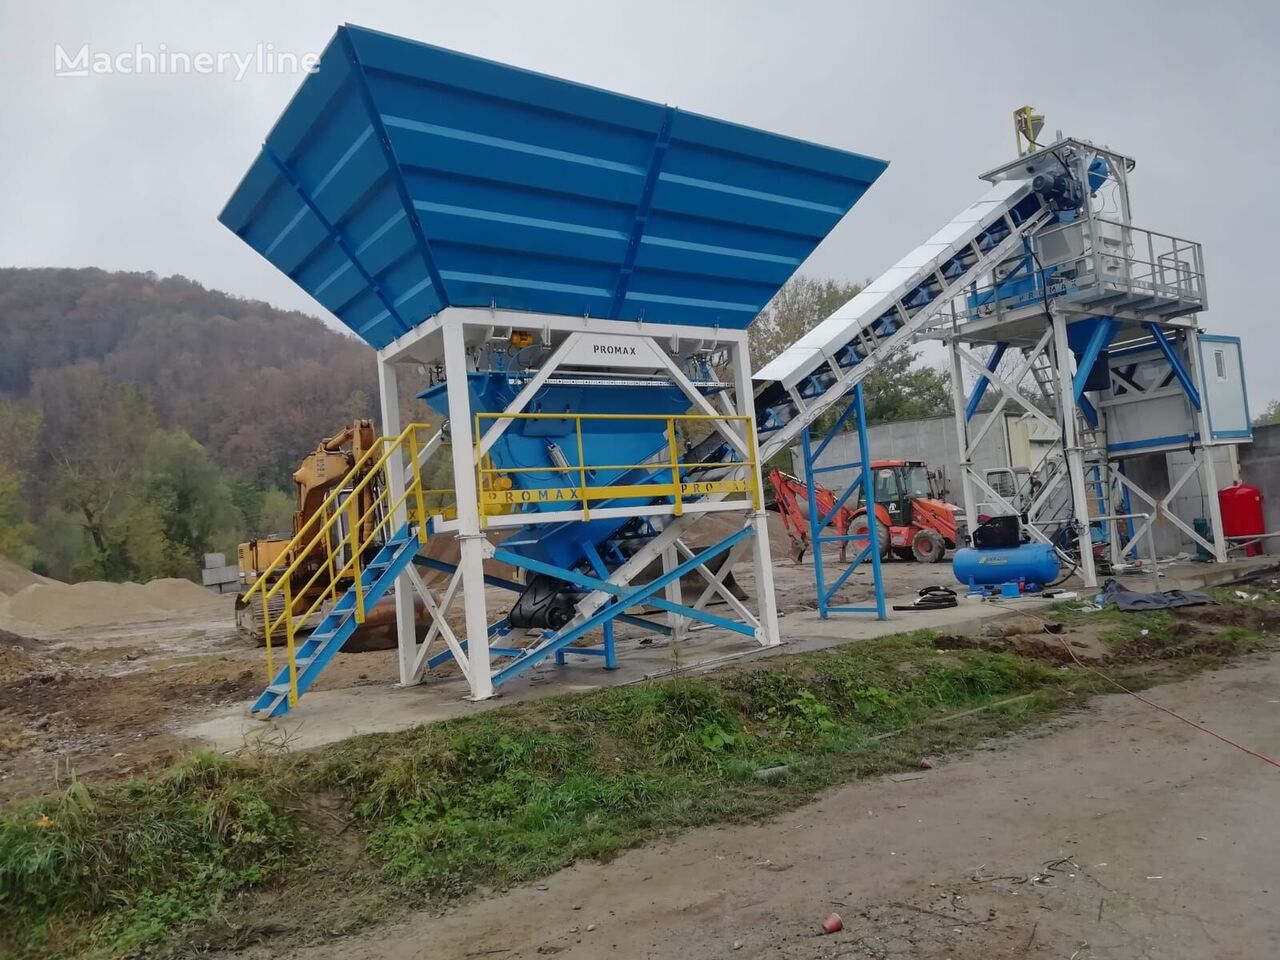 جديد ماكينة صناعة الخرسانة Promax Impianto di Betonaggio Compatto PROMAX C60-SNG-PLUS (60m³/h)